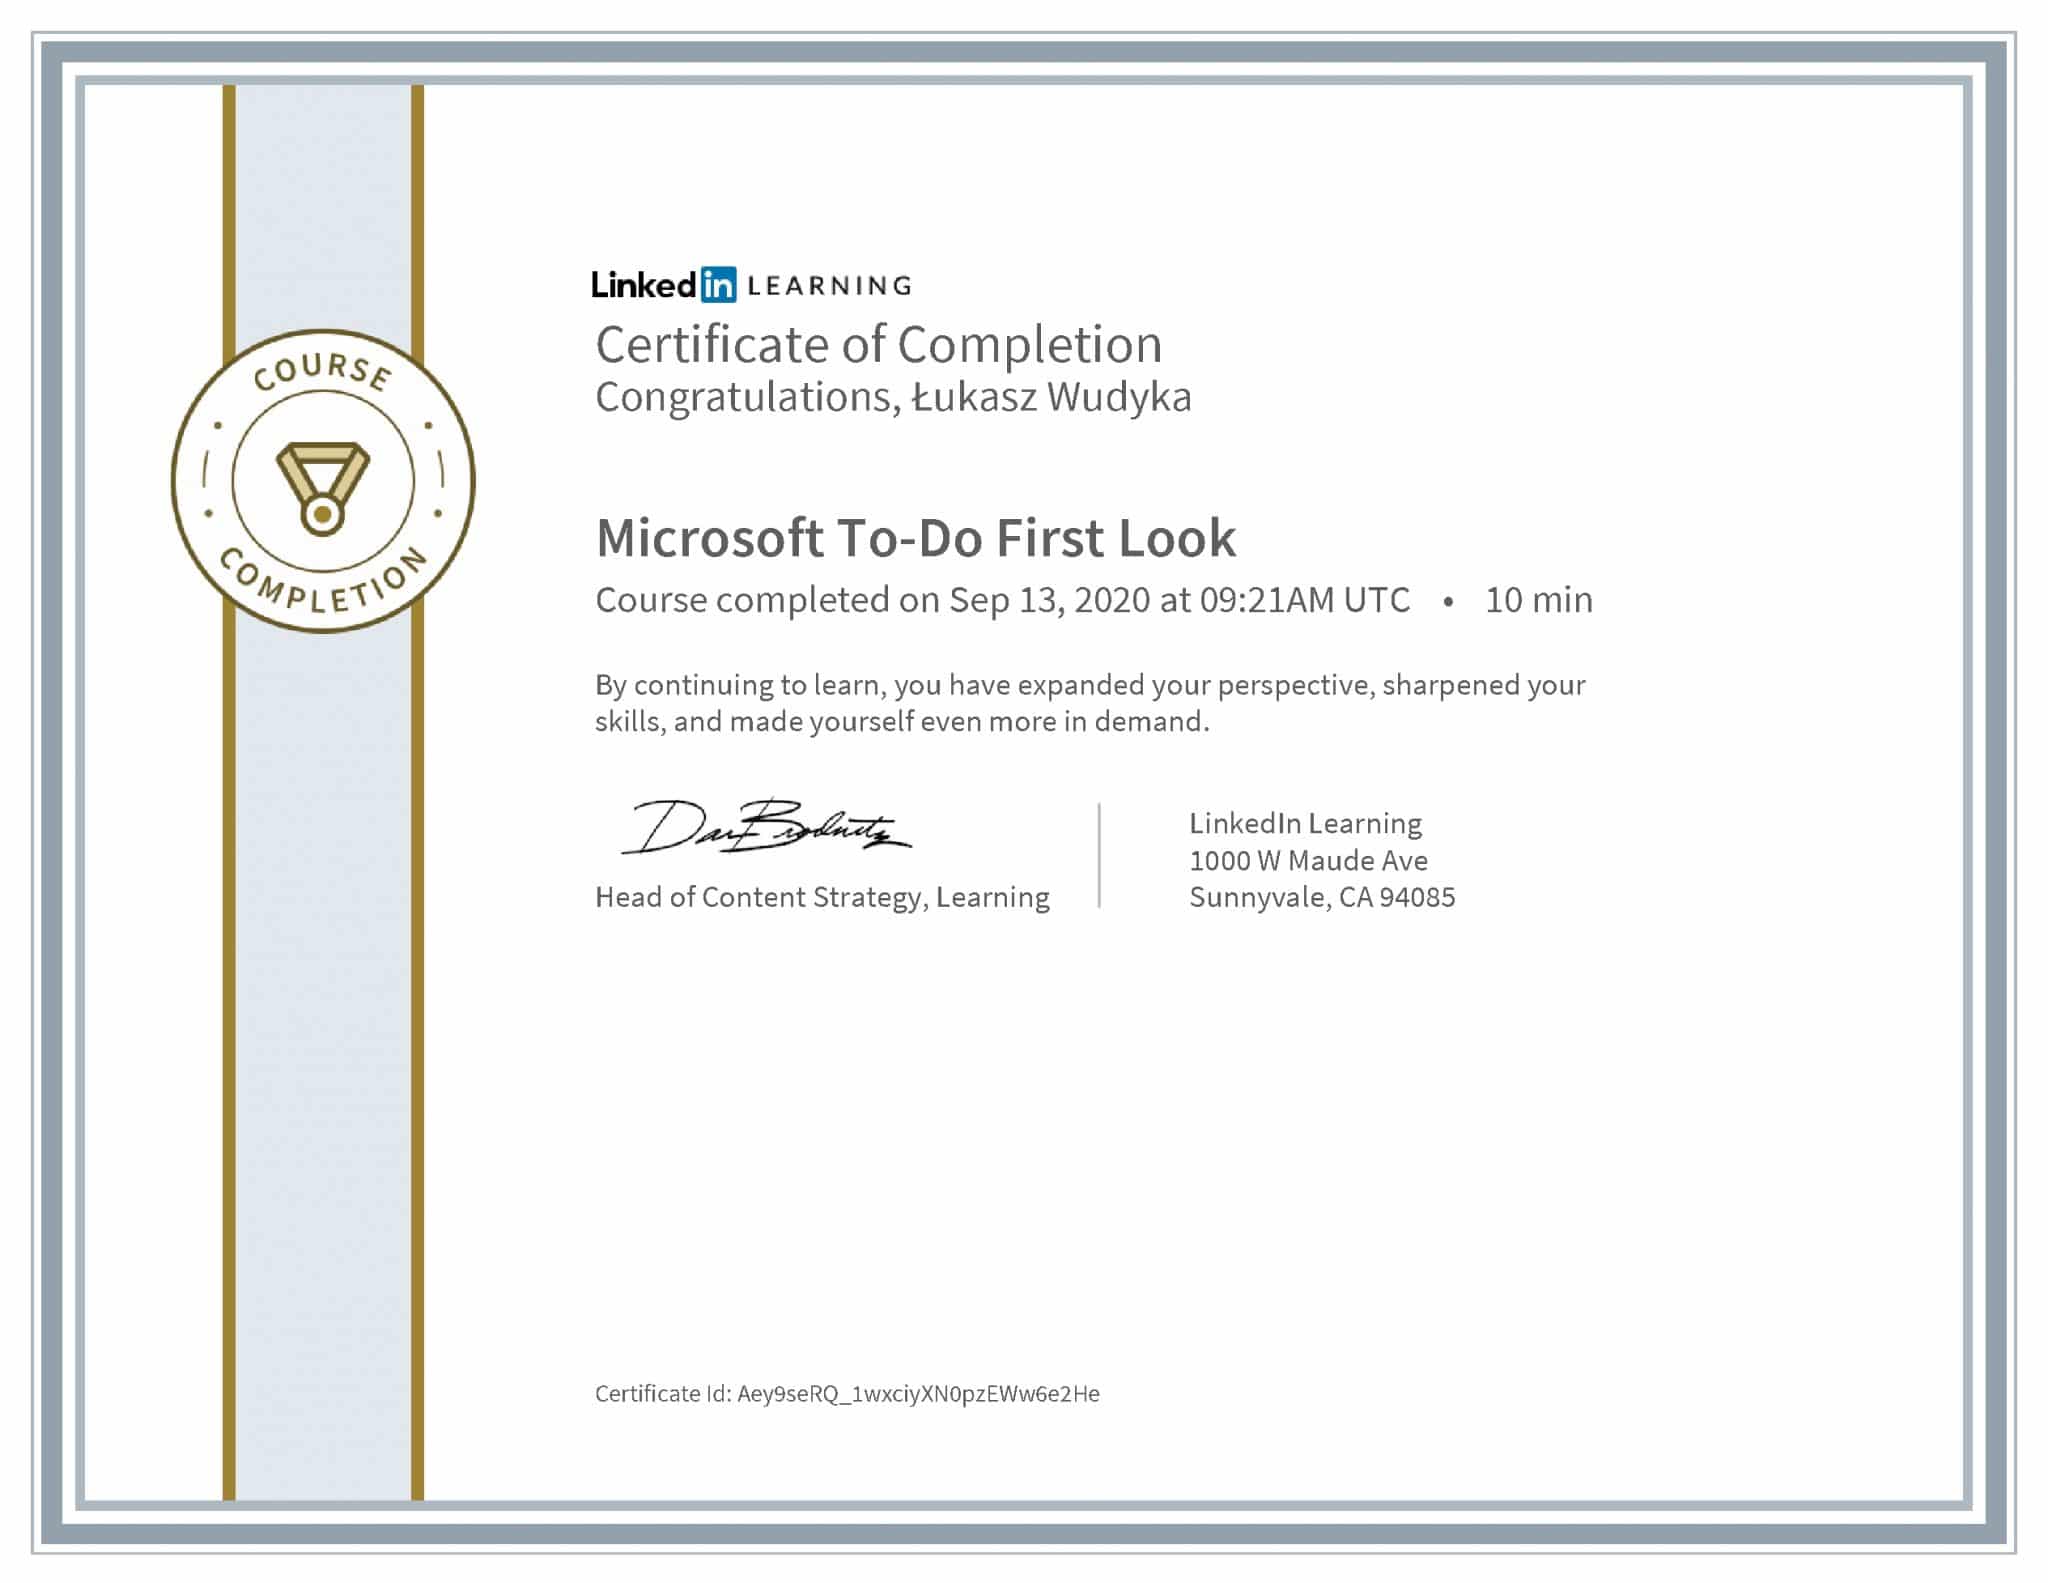 Łukasz Wudyka certyfikat LinkedIn Microsoft To-Do First Look